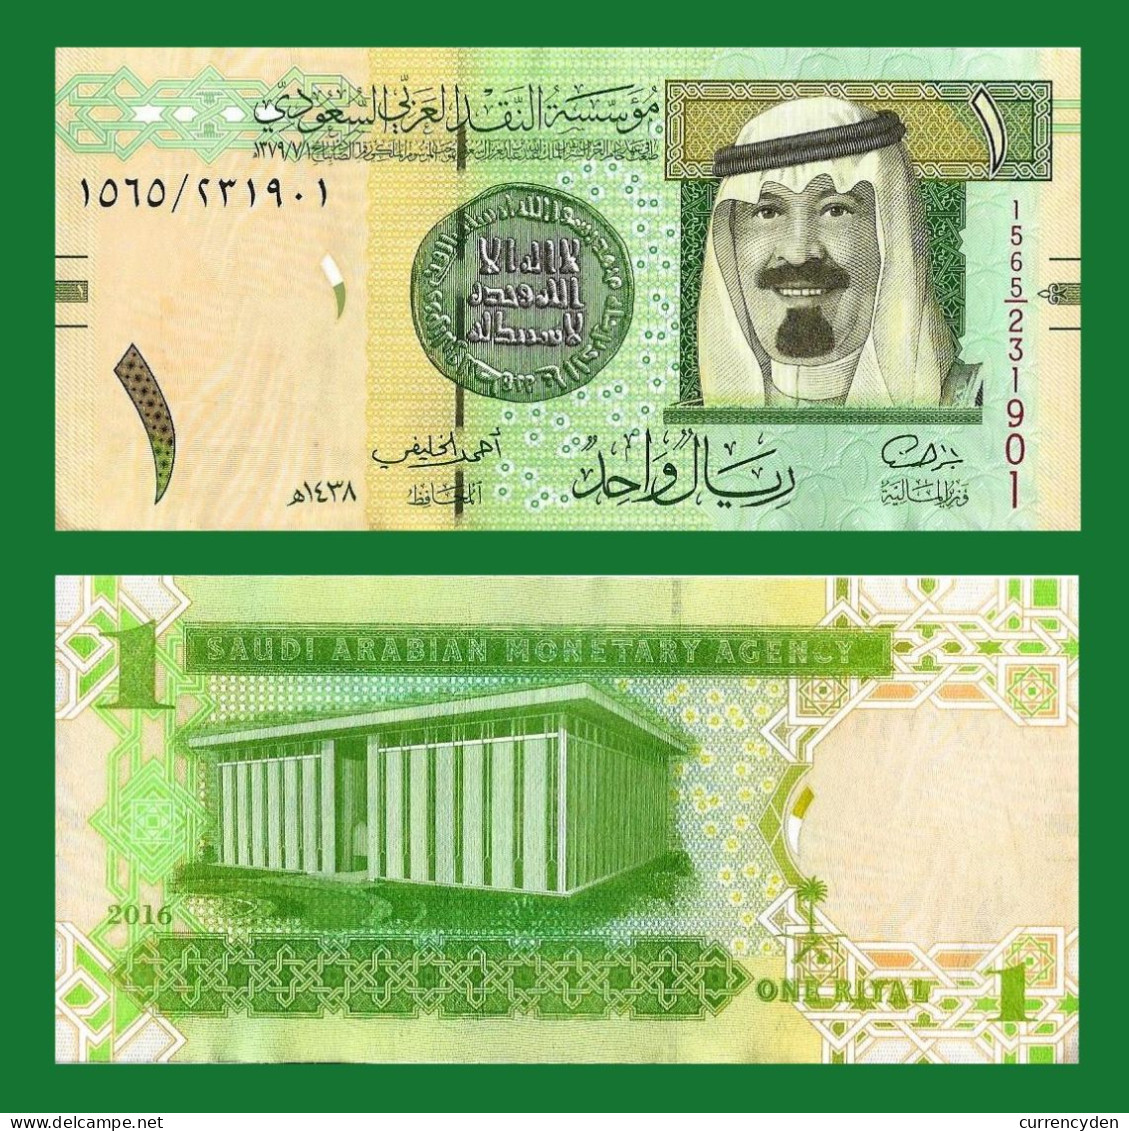 Saudi Arabia P31c, 1 Riyal, Gold Dinar Coin, King Abdullah / Building, UNC, 2012 - Saudi Arabia